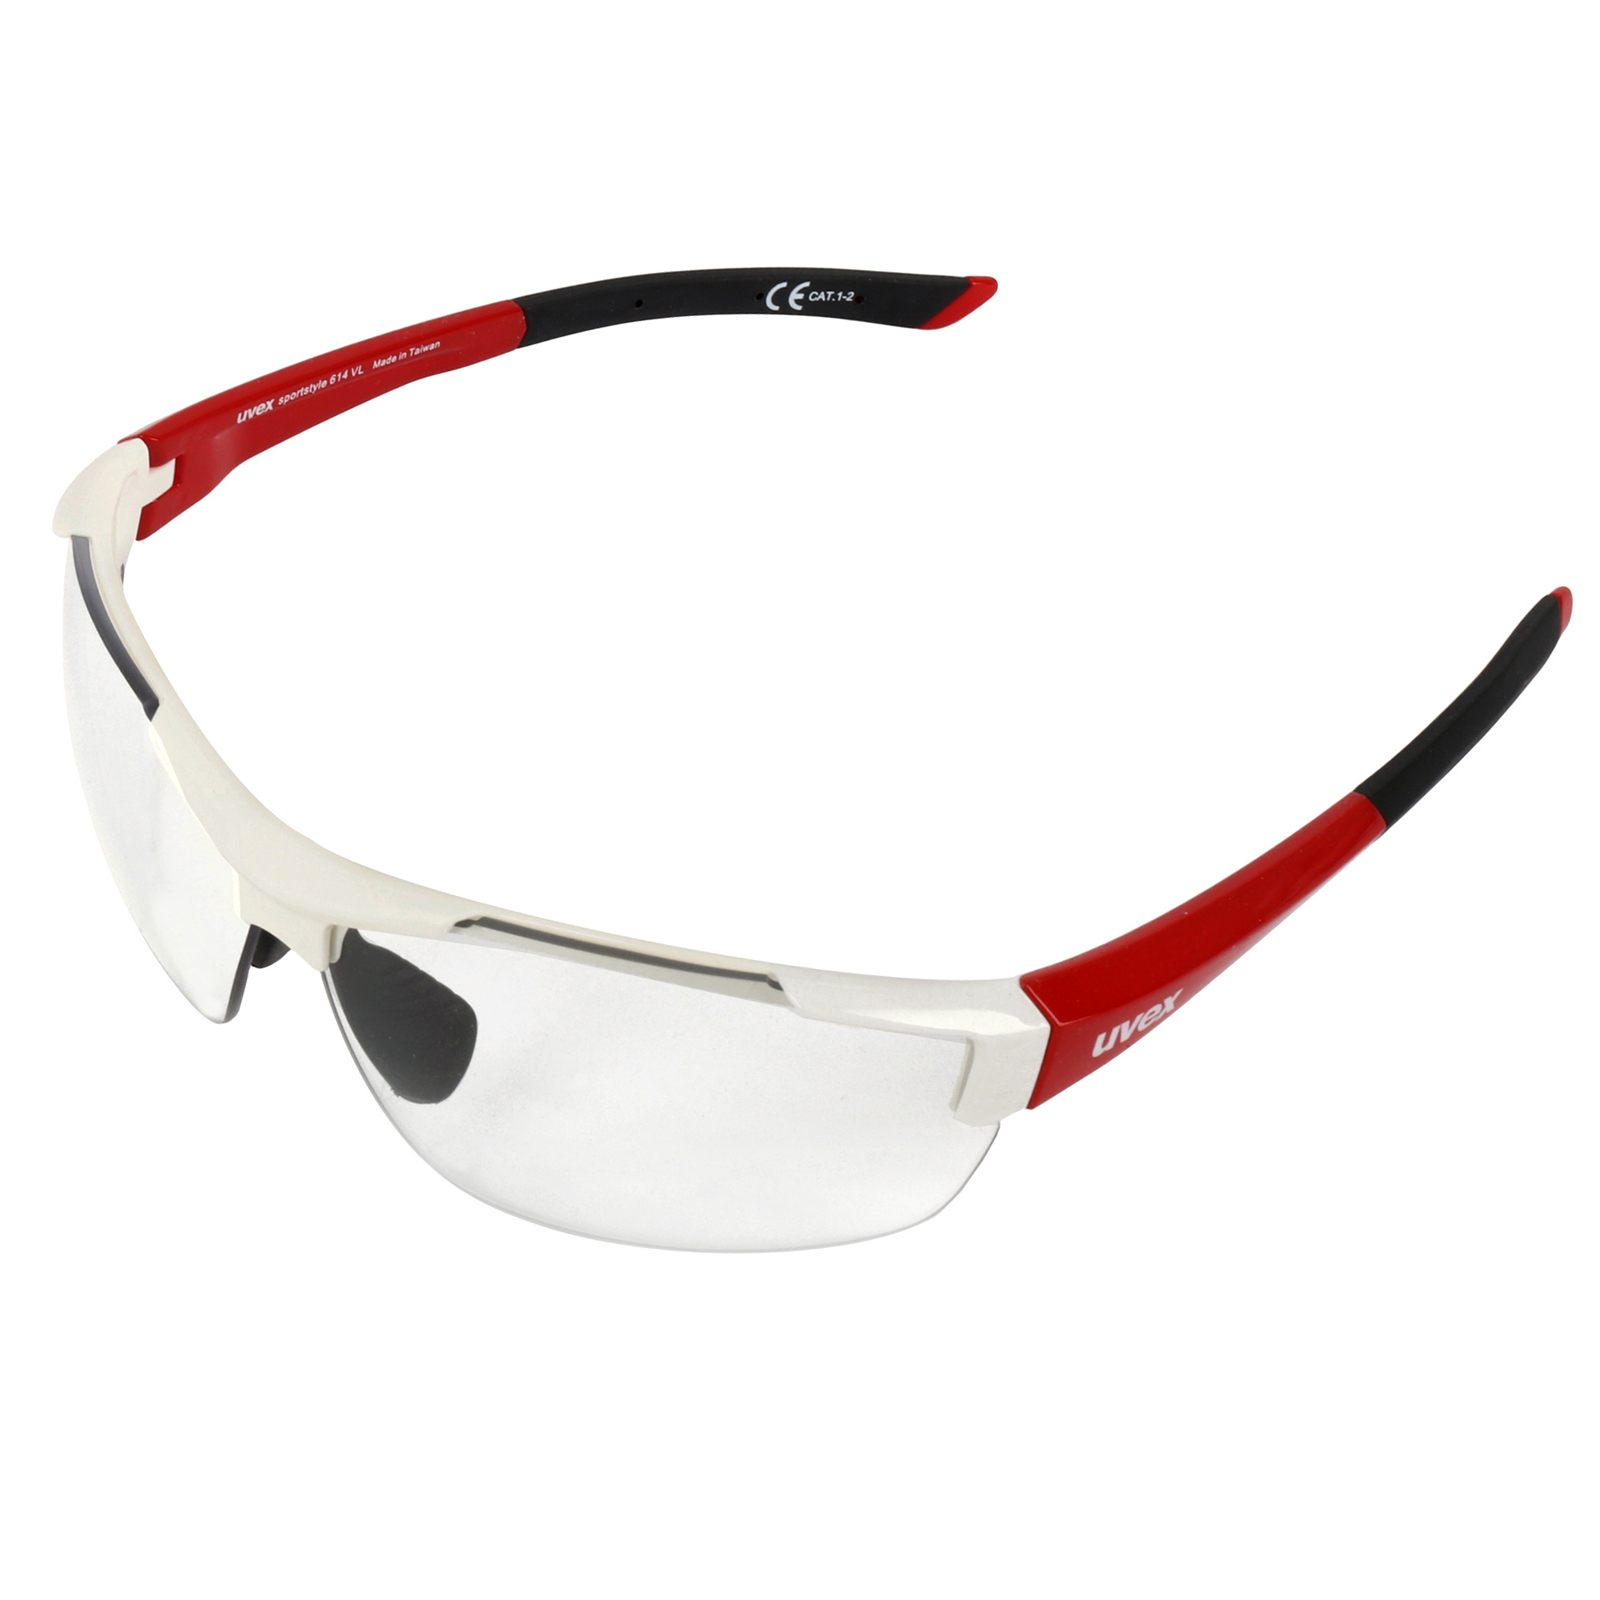 Produktbild von Uvex sportstyle 614 VL Brille - white red / smoke - S5308938390